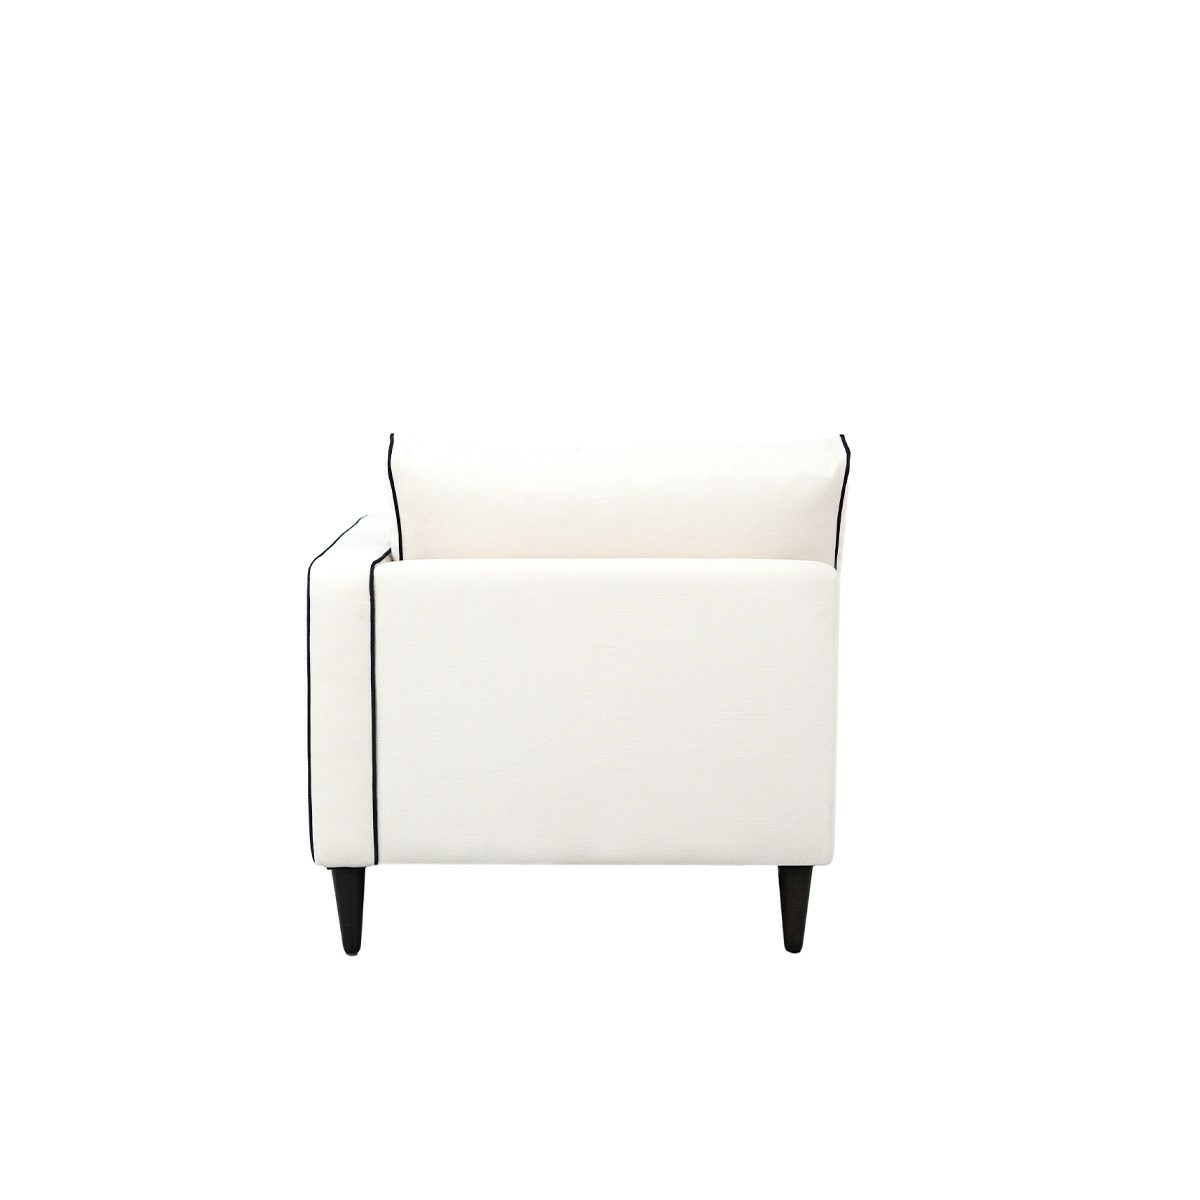 Noa sofa - Right armrest, L180 x P90 x H80 cm - Cotton - image 6